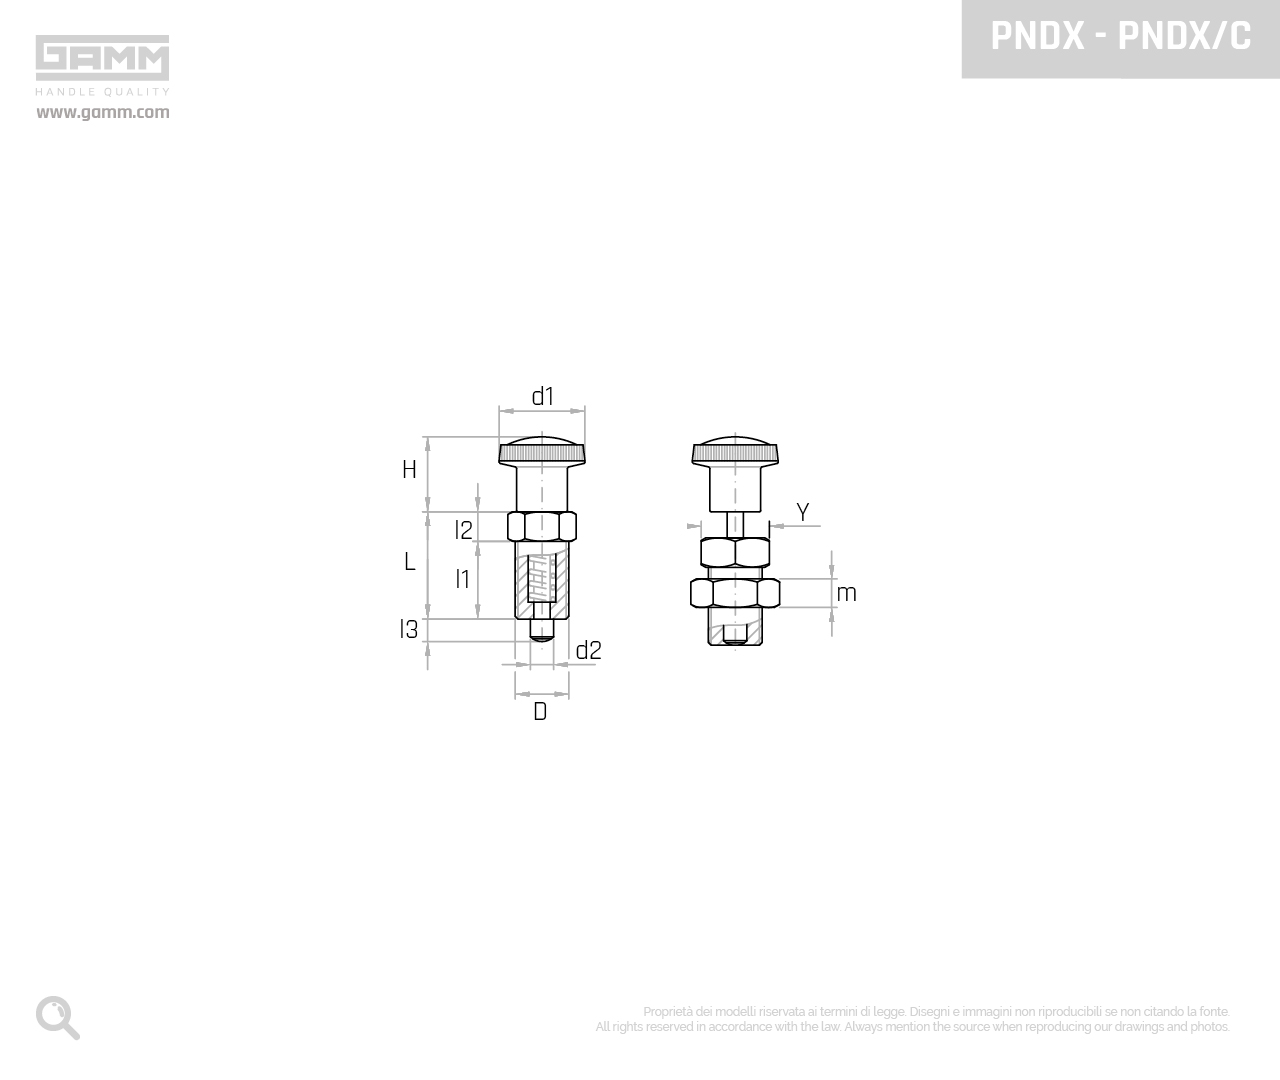 PNDX PNDX C disegno pistoncini e pressori GAMM